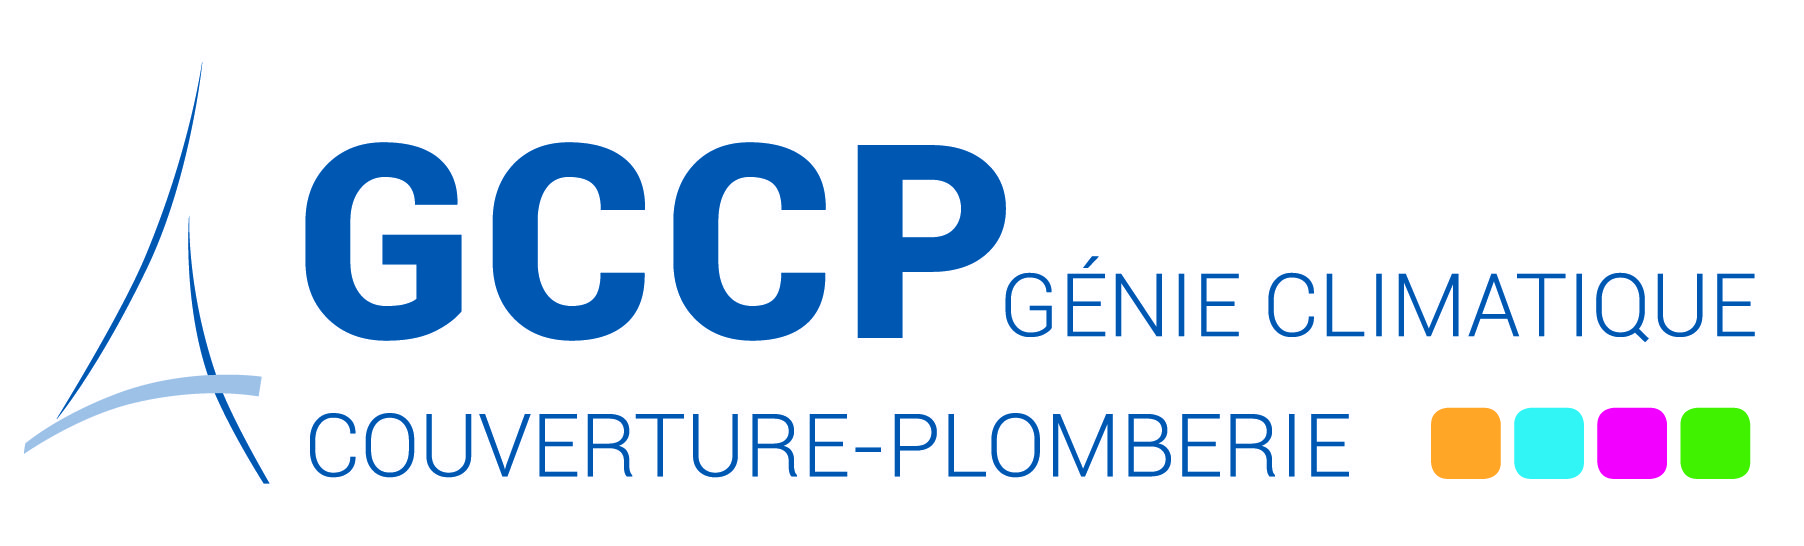 Syndicat des entreprises de génie climatique et de couverture plomberie (GCCP)
10 rue du Débarcadère
75852 PARIS CEDEX 17